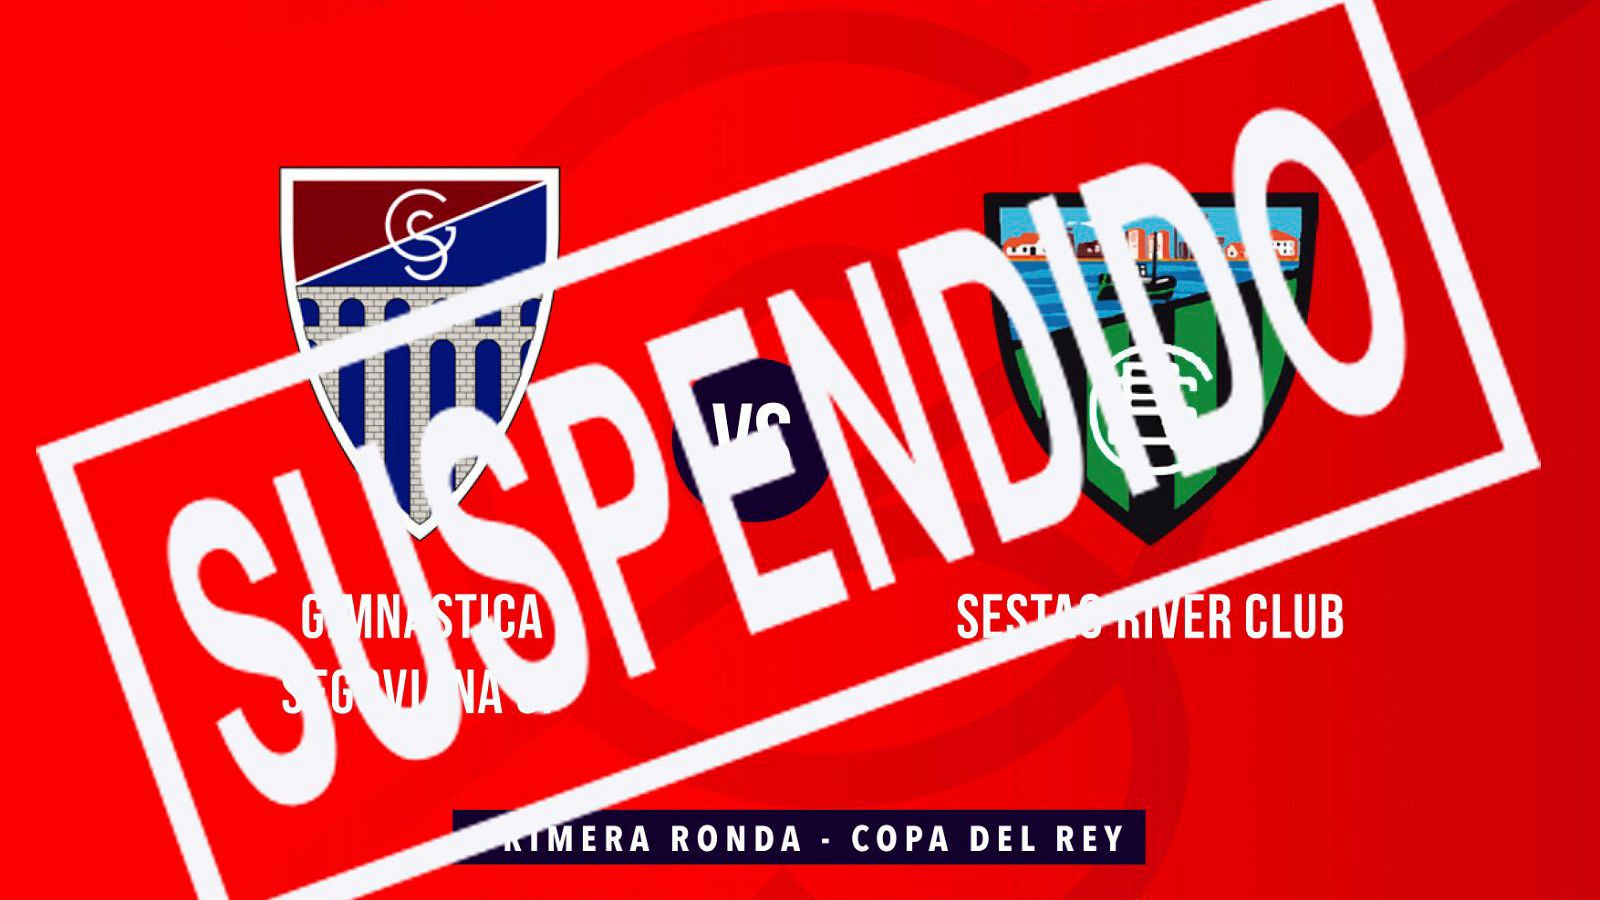 Suspendido el Gimnástica Segoviana - Sestao River de Copa del Rey